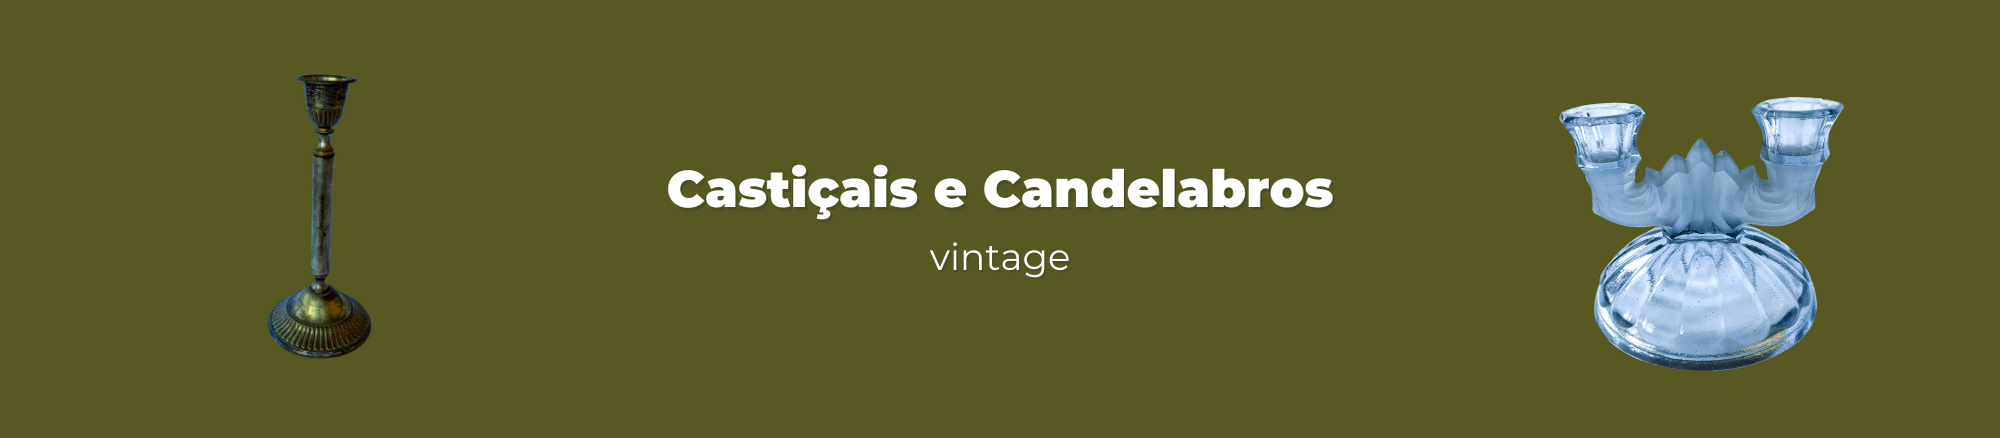 Castiçais e Candelabros Vintage